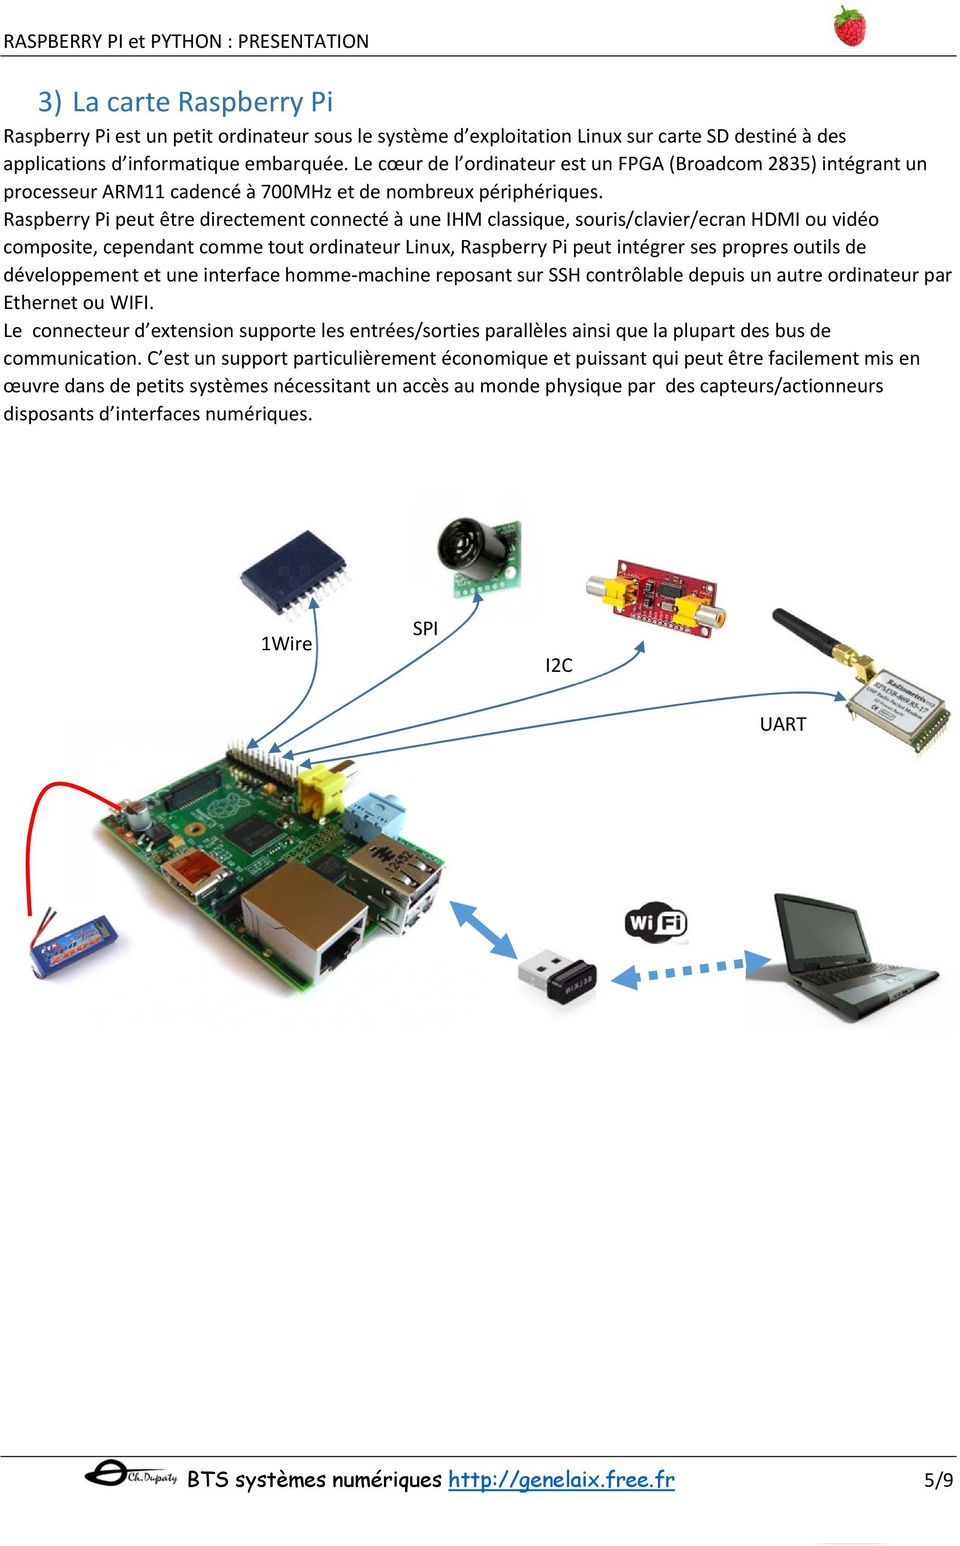 Raspberry Pi peut être directement connecté à une IHM classique, souris/clavier/ecran HDMI ou vidéo composite, cependant comme tout ordinateur Linux, Raspberry Pi peut intégrer ses propres outils de